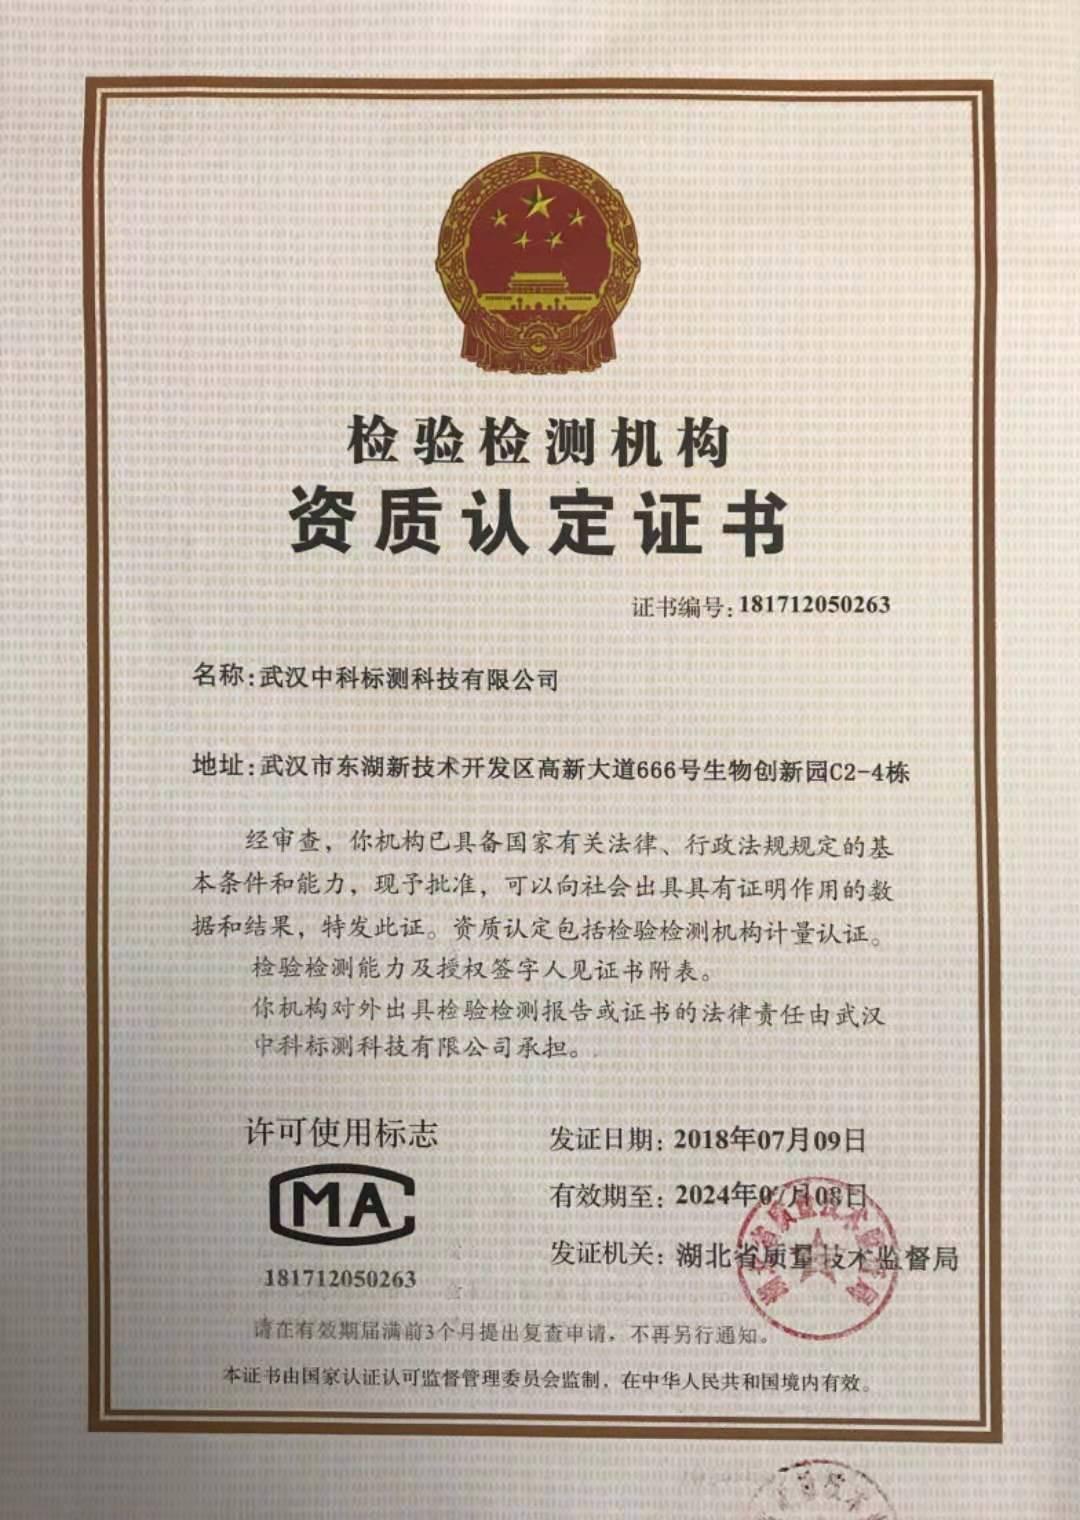 武汉甲醛检测选CMA认证且武汉有国标实验室的检测机构